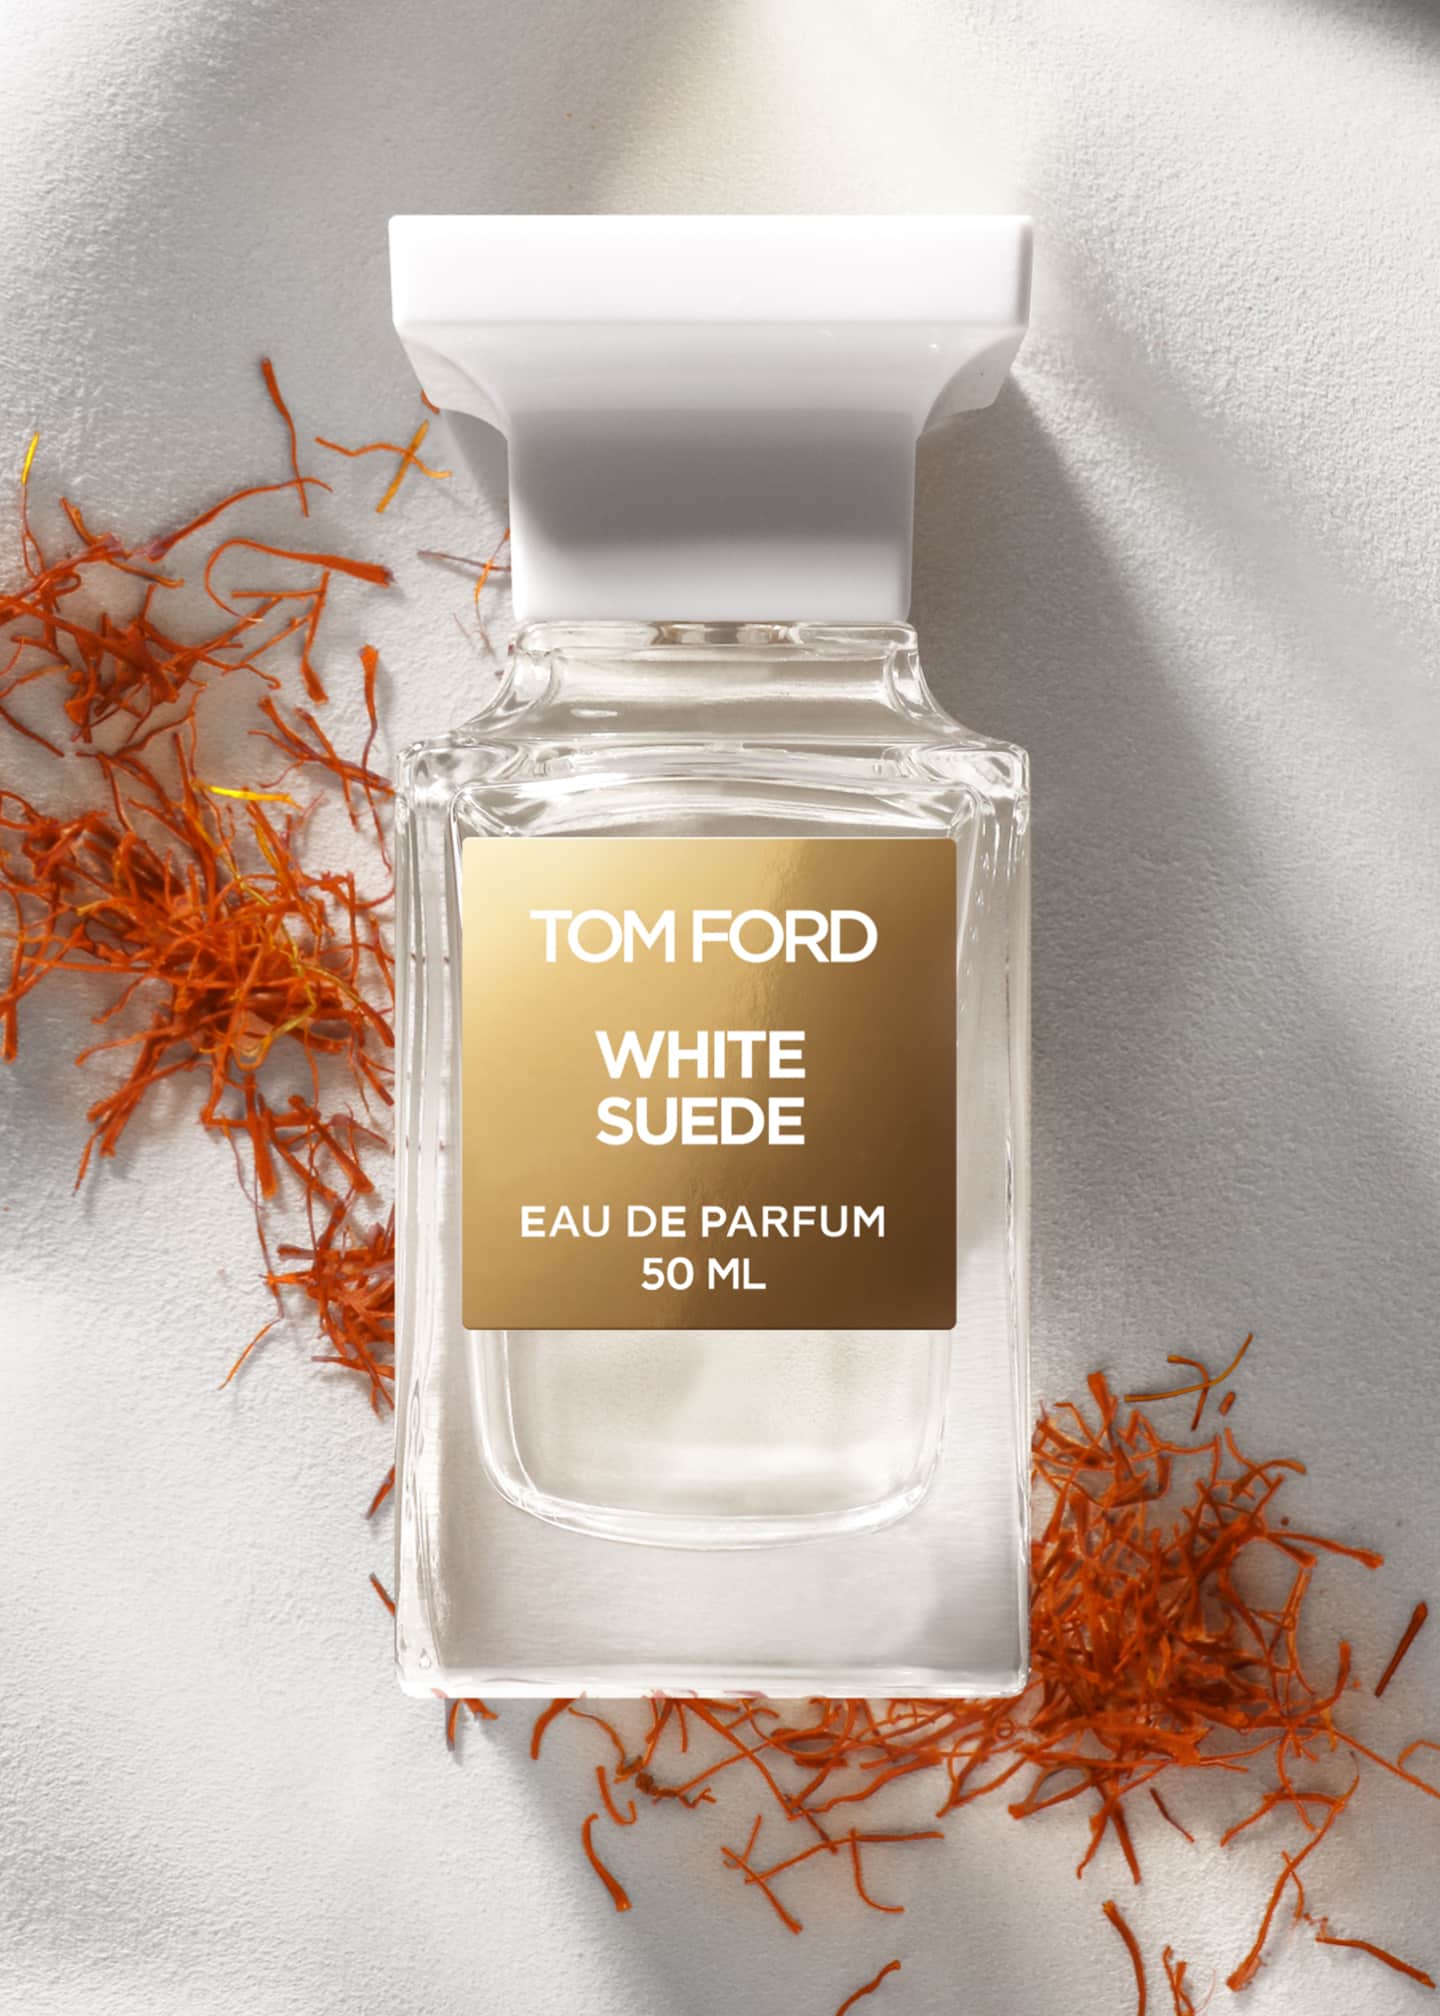 TOM FORD White Suede Eau de Parfum, 1.0 oz. - Bergdorf Goodman